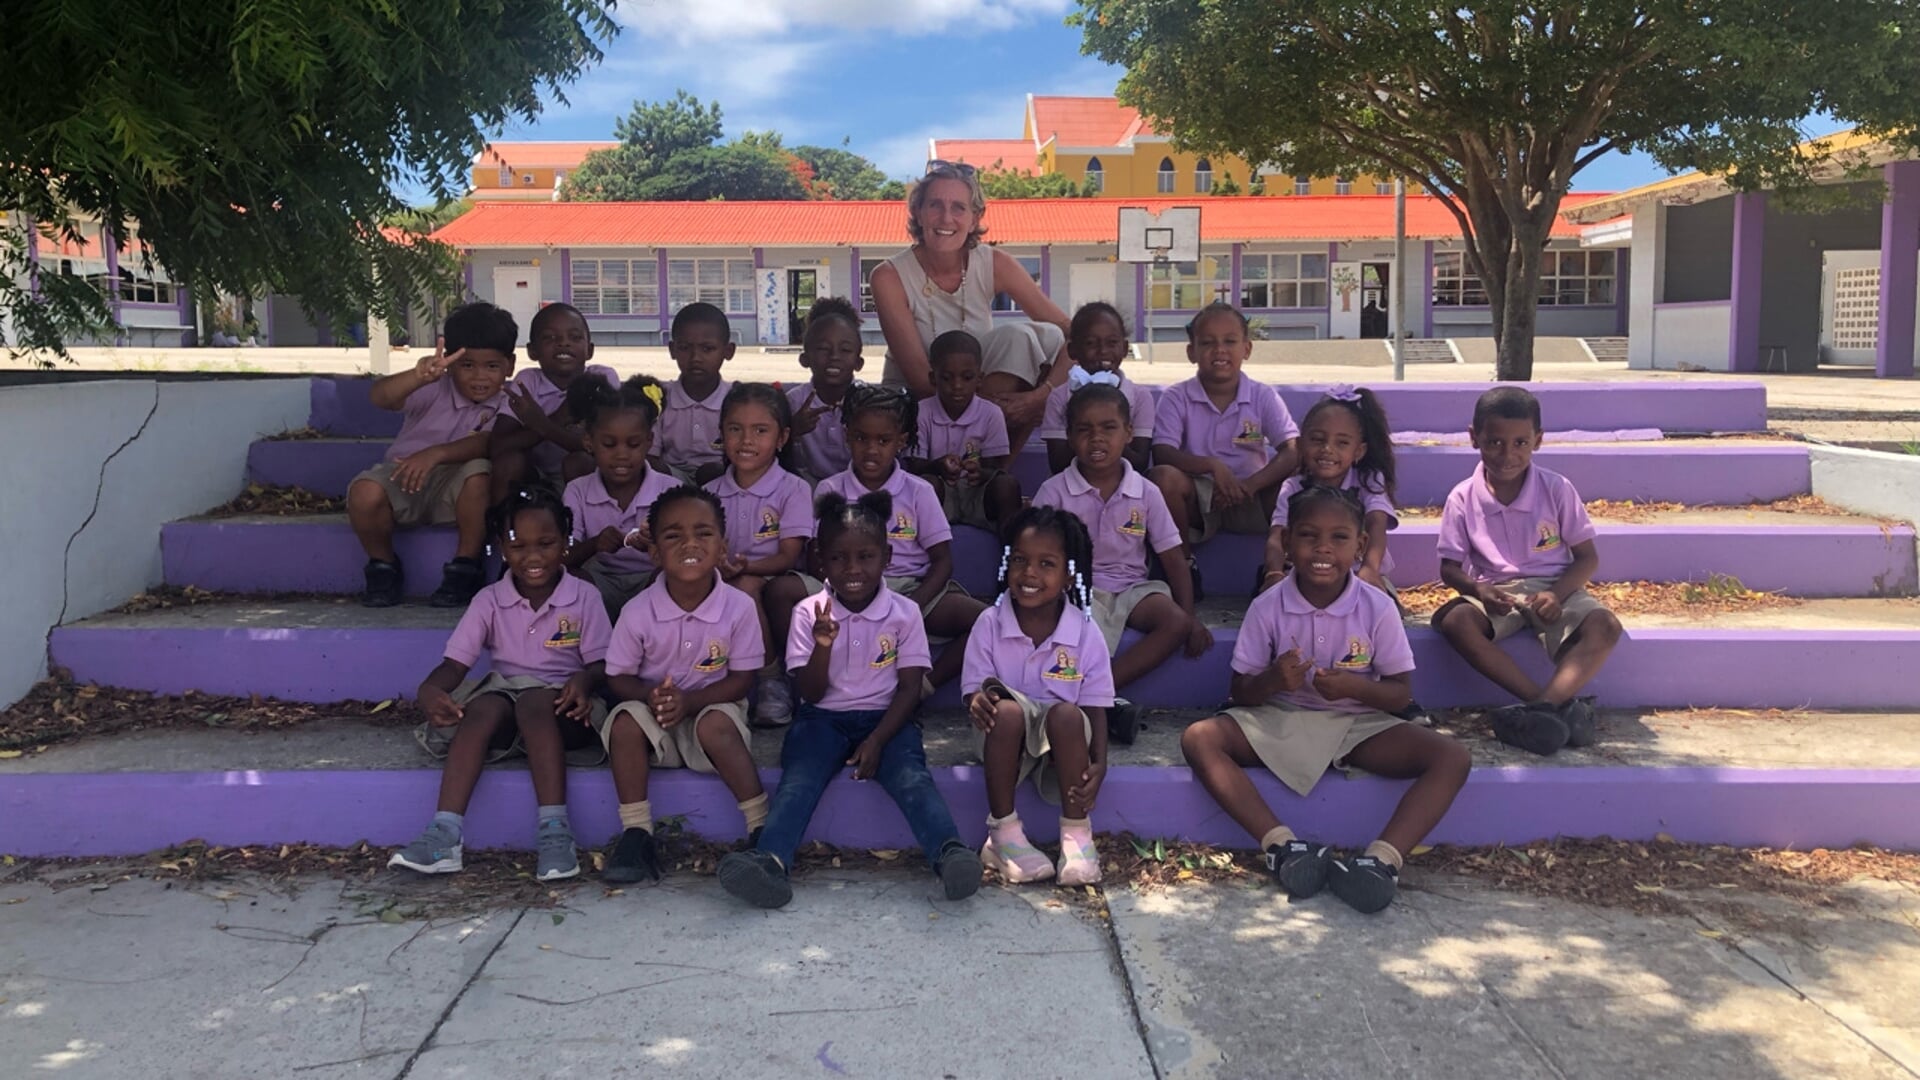 • Sonja Verlaat met de kinderen uit groep 1/2 van de school op Curaçao waar ze les gaf.